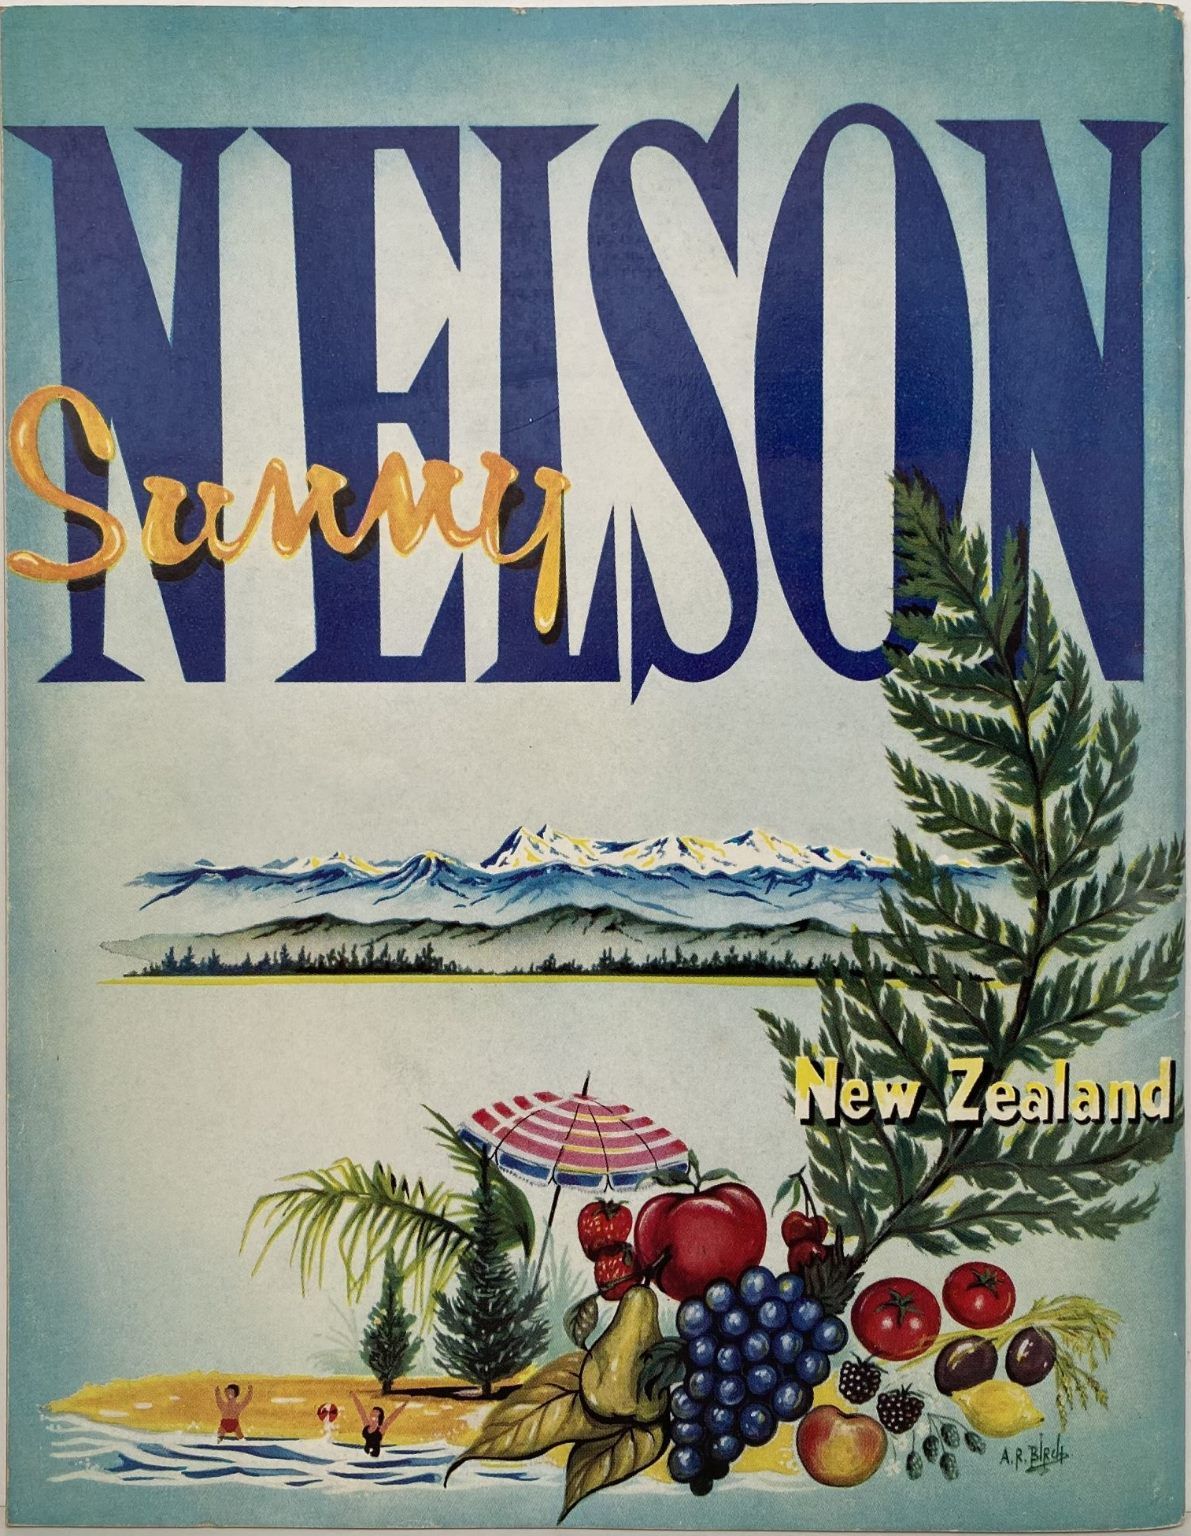 SUNNY NELSON, New Zealand